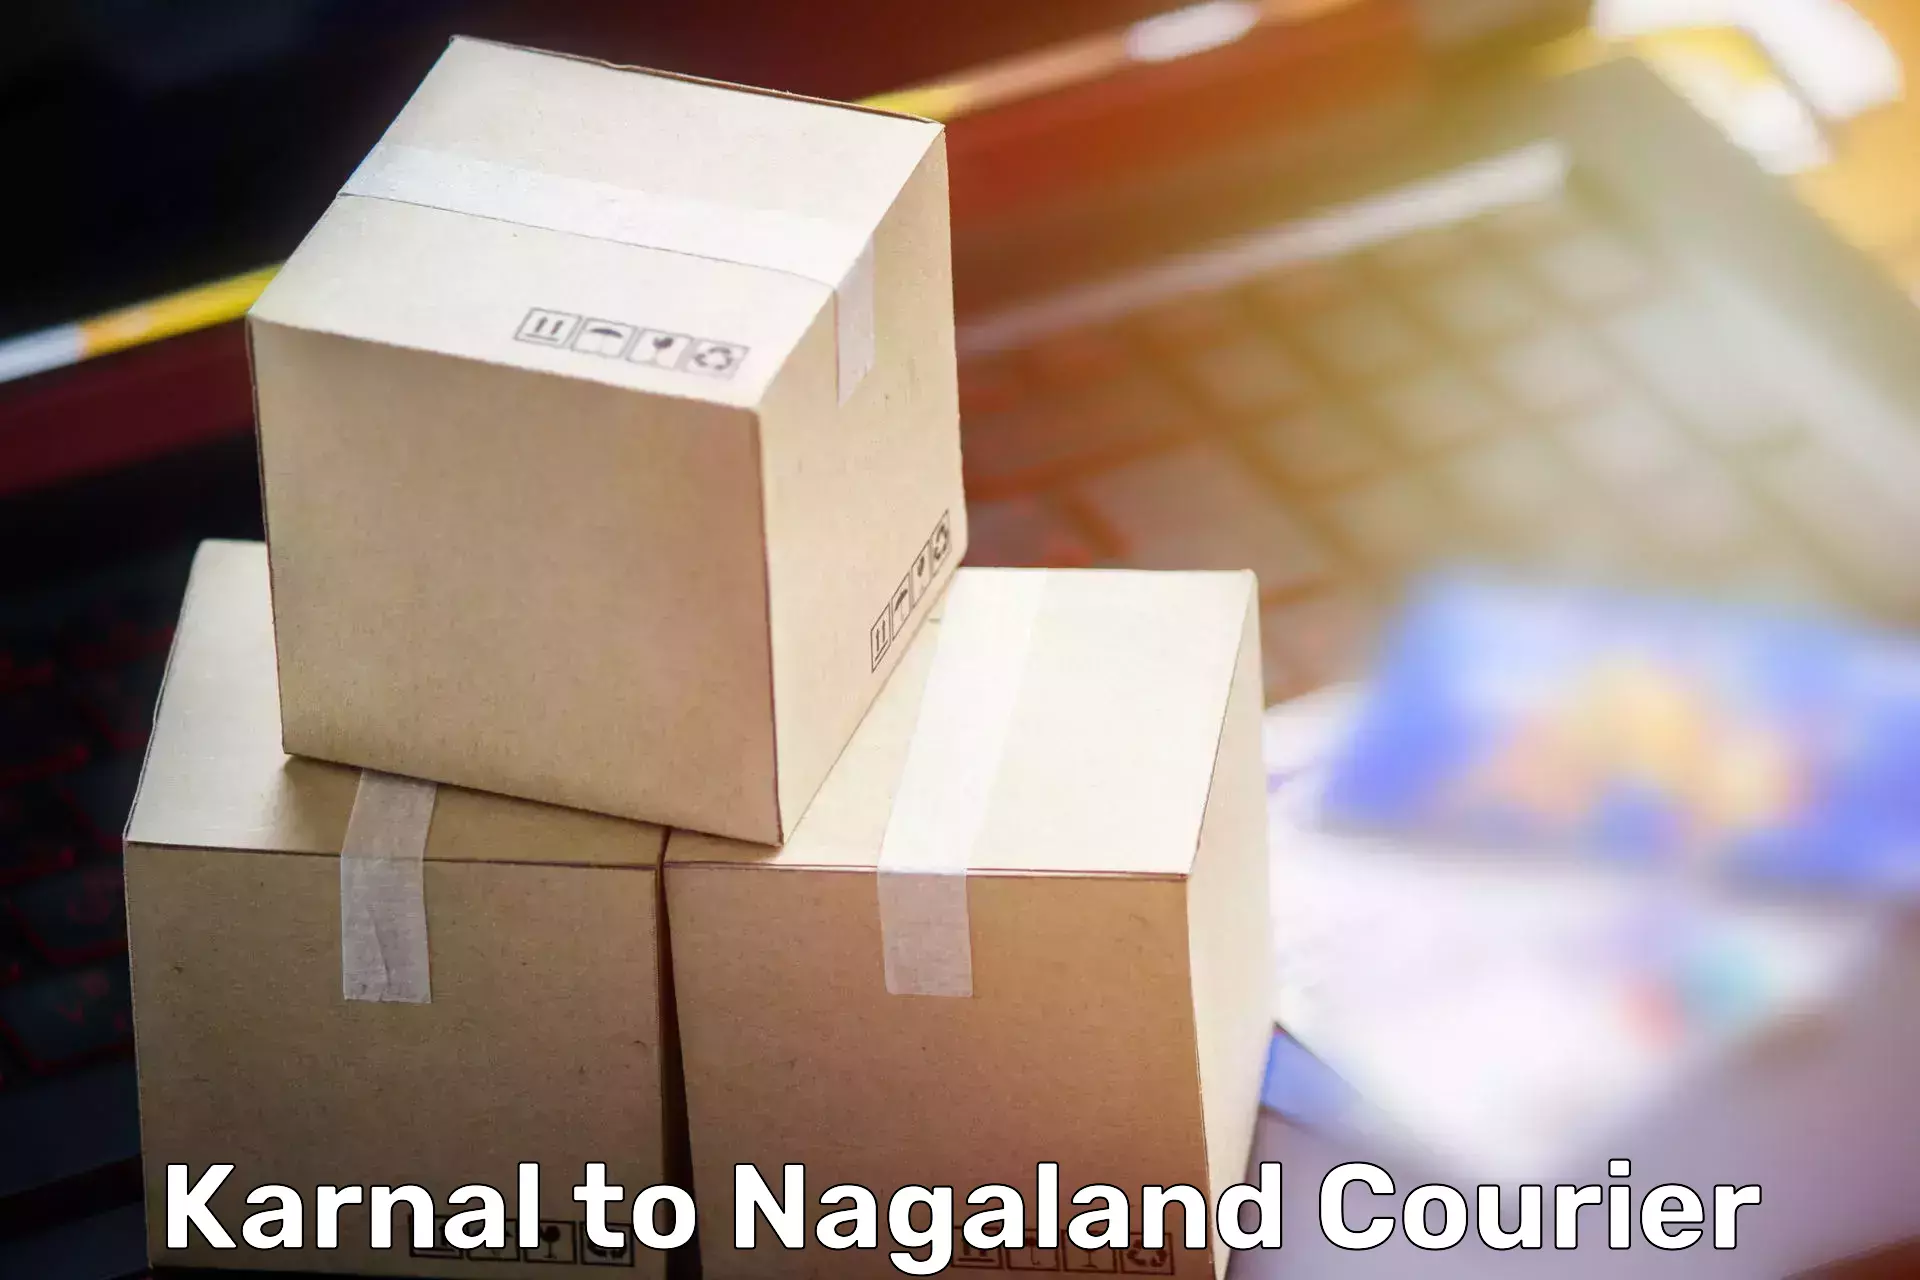 Furniture transport professionals Karnal to Nagaland